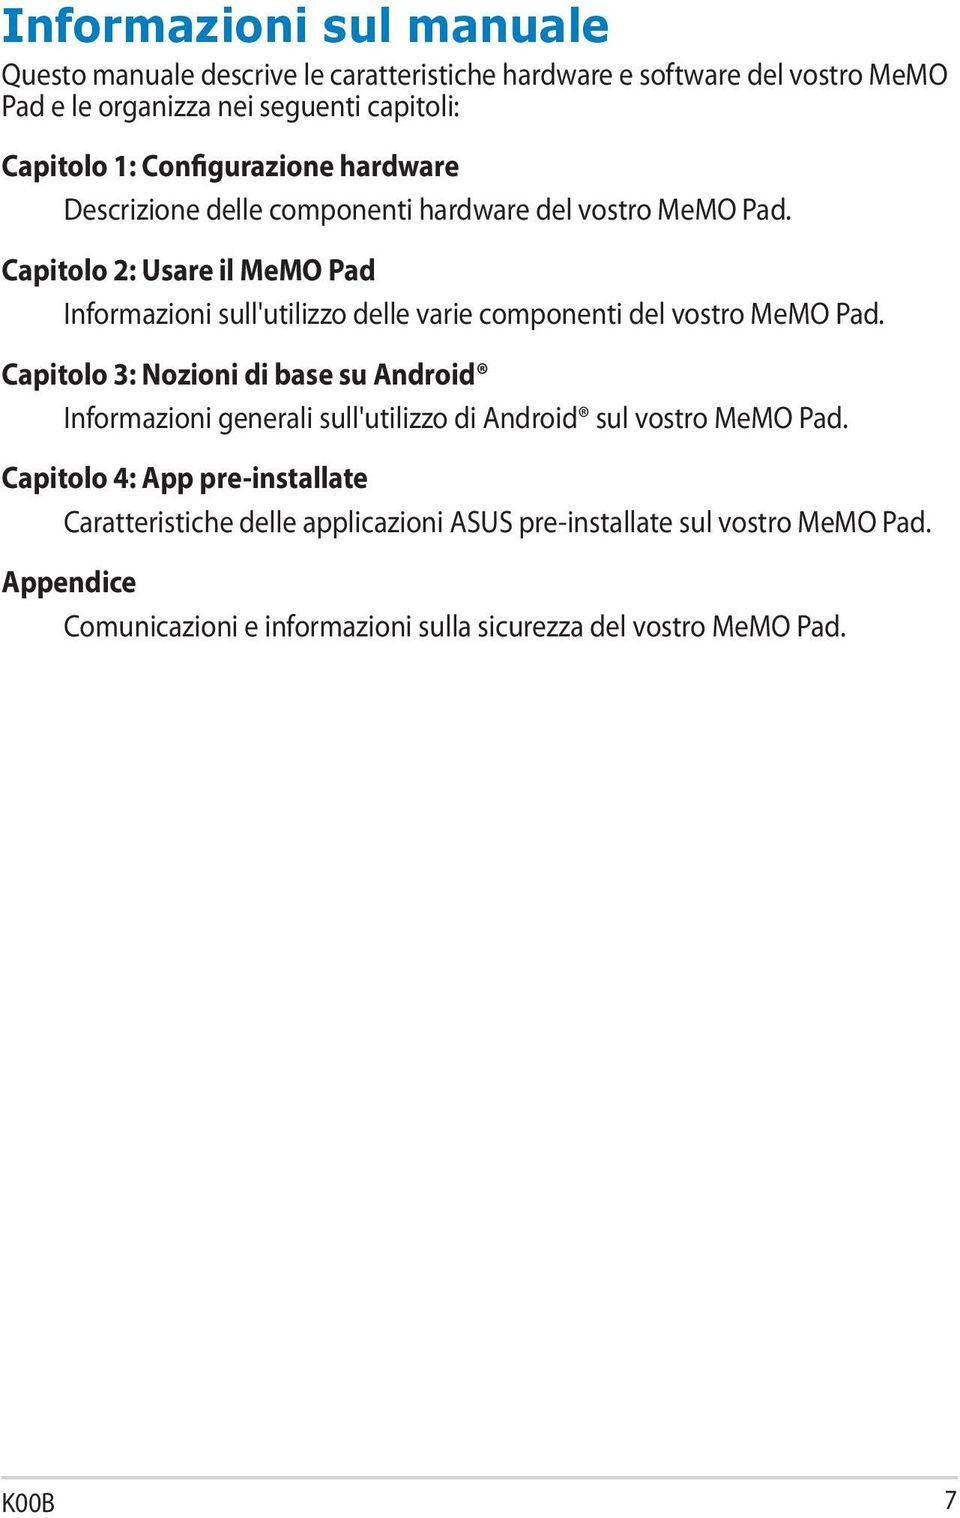 Capitolo 2: Usare il MeMO Pad Informazioni sull'utilizzo delle varie componenti del vostro MeMO Pad.